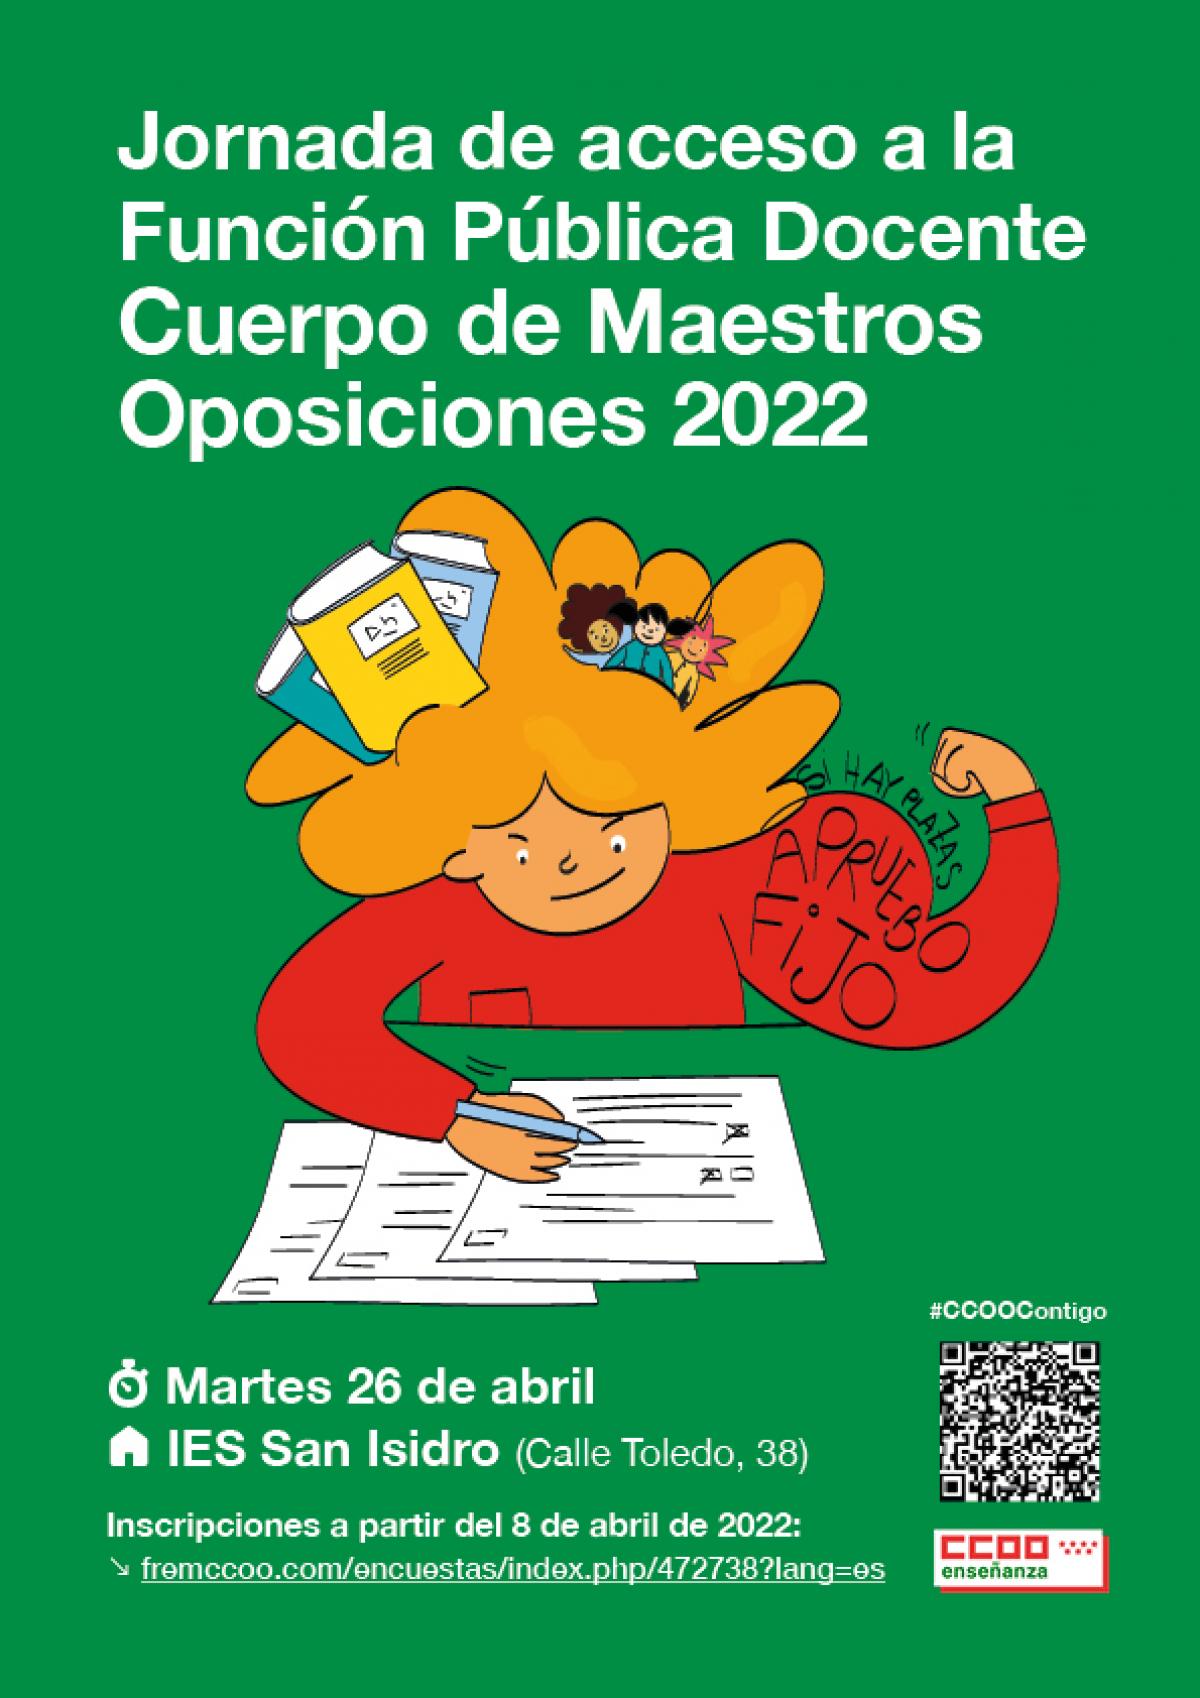 Jornada de acceso a la Función Pública Docente Cuerpo de Maestros Oposiciones 2022